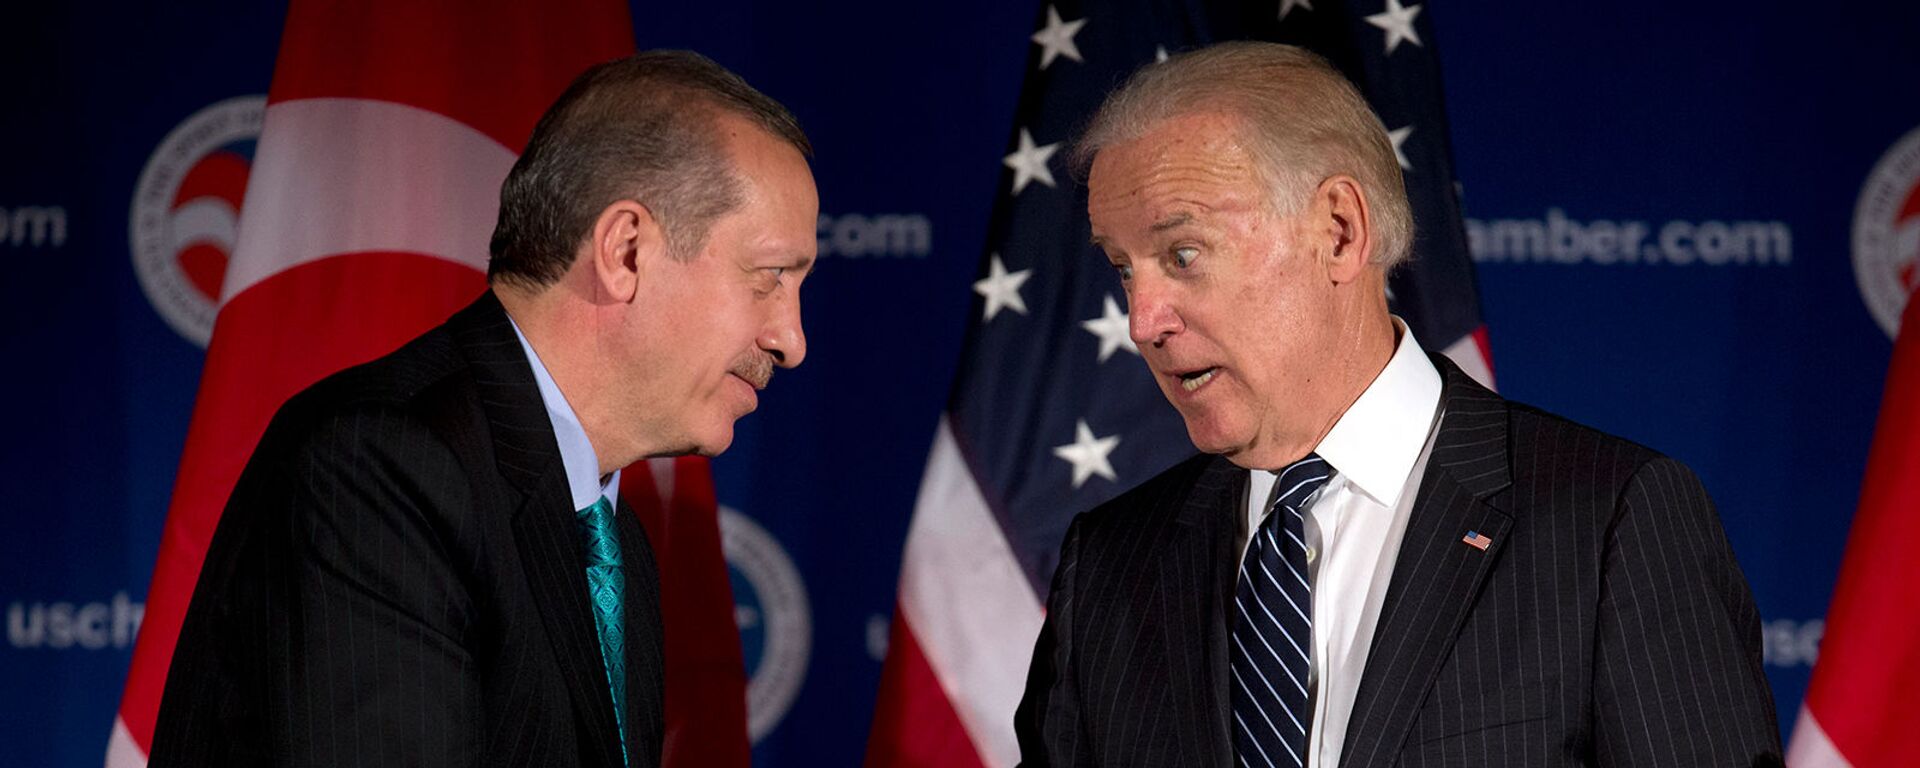 Вице-президент США Джо Байден и премьер-министр Турции Реджеп Тайип Эрдоган приветствуют друг друга во время круглого стола, организованного Торговой палатой США (16 мая 2013). Вашингтон - Sputnik Армения, 1920, 09.06.2021